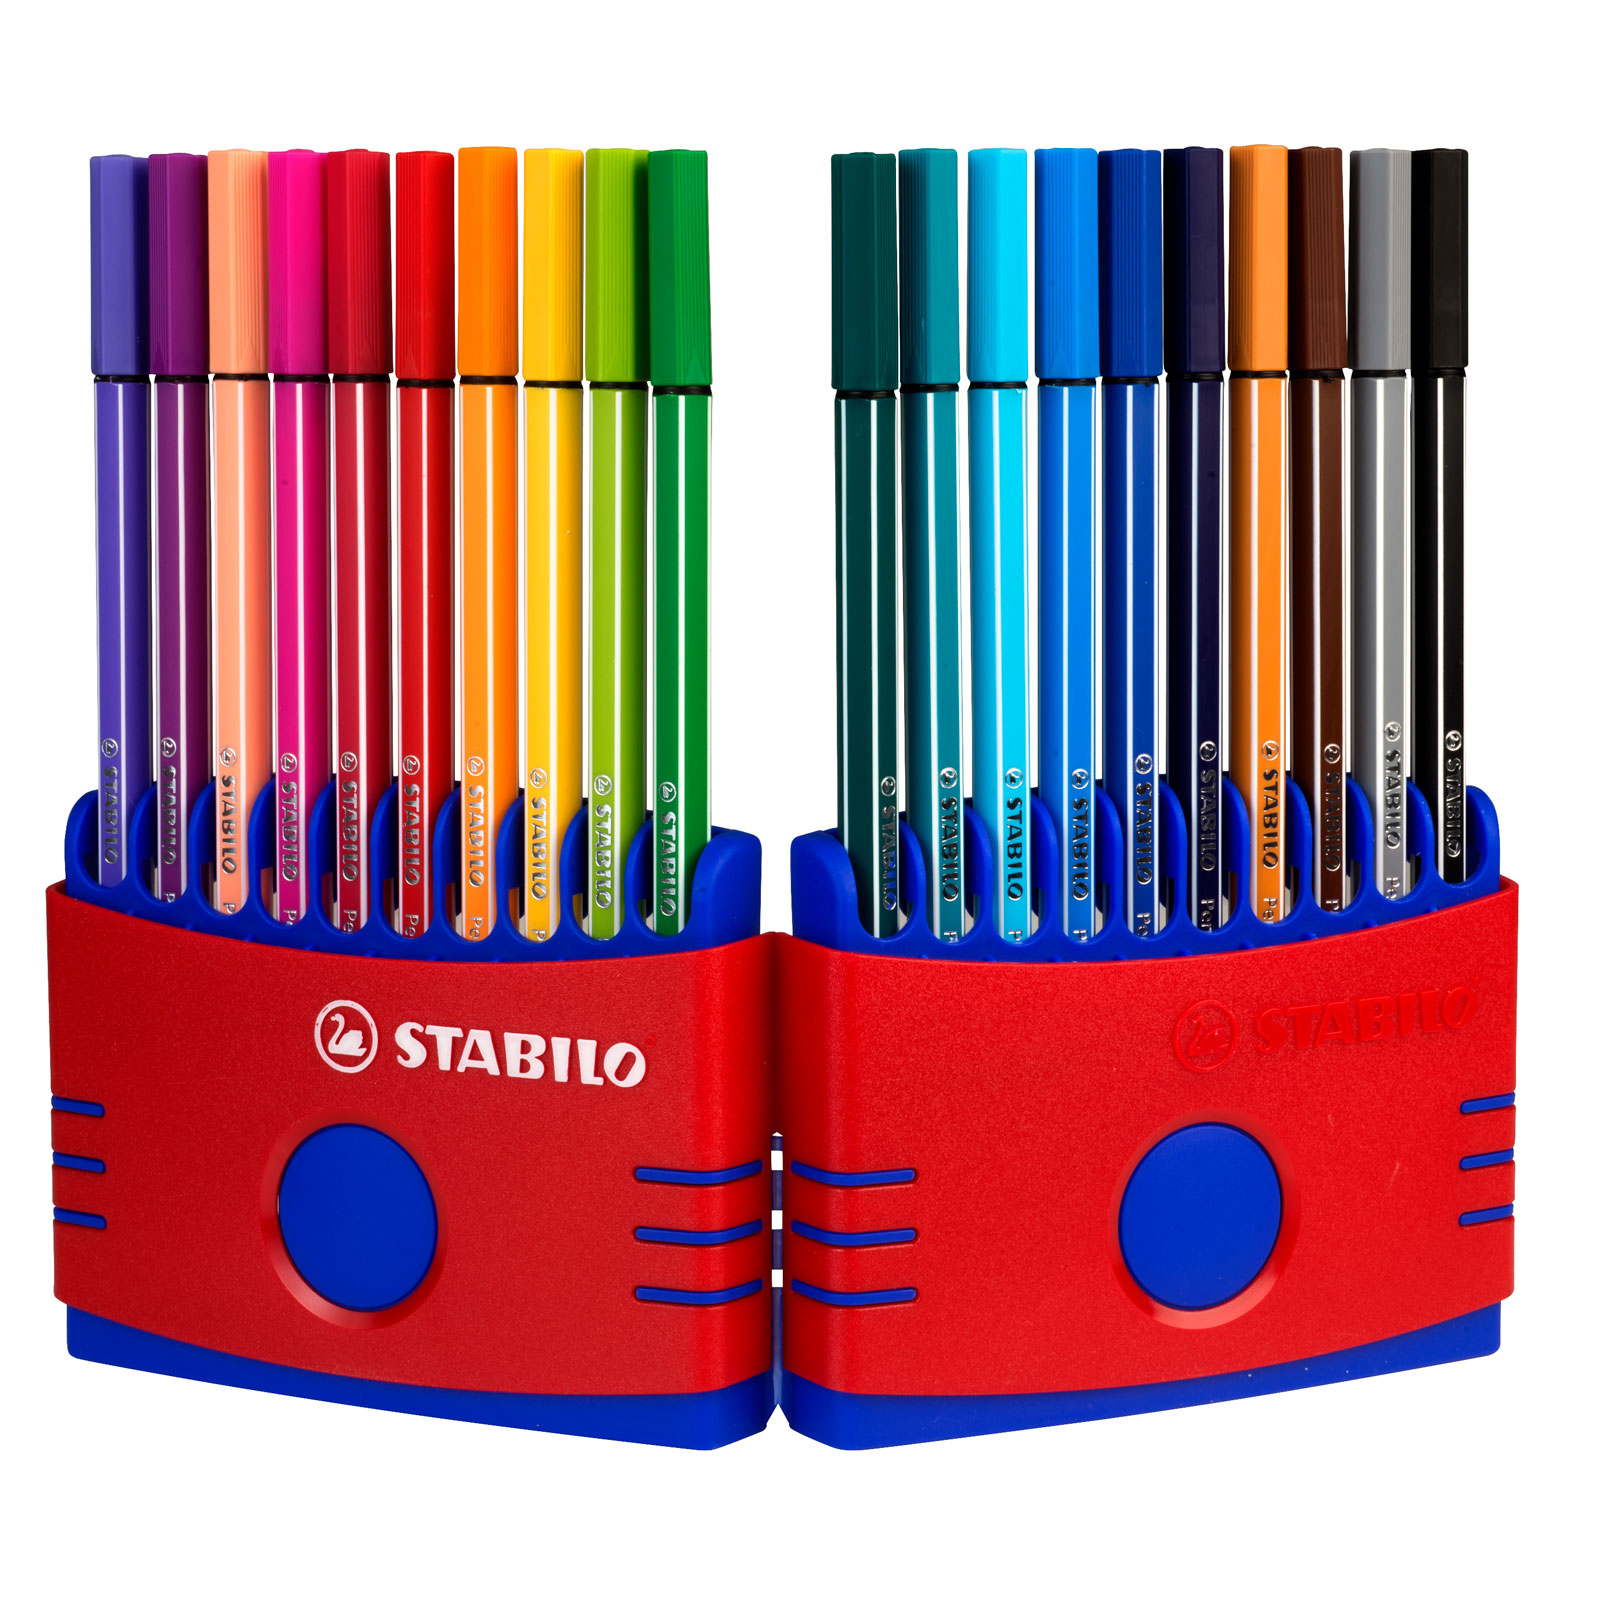 Bakkerij Beperkt brandwond Stabilo Pen 68 Colorparade - Assorted Wallet of 20 Fibre Pens | Rapid Online